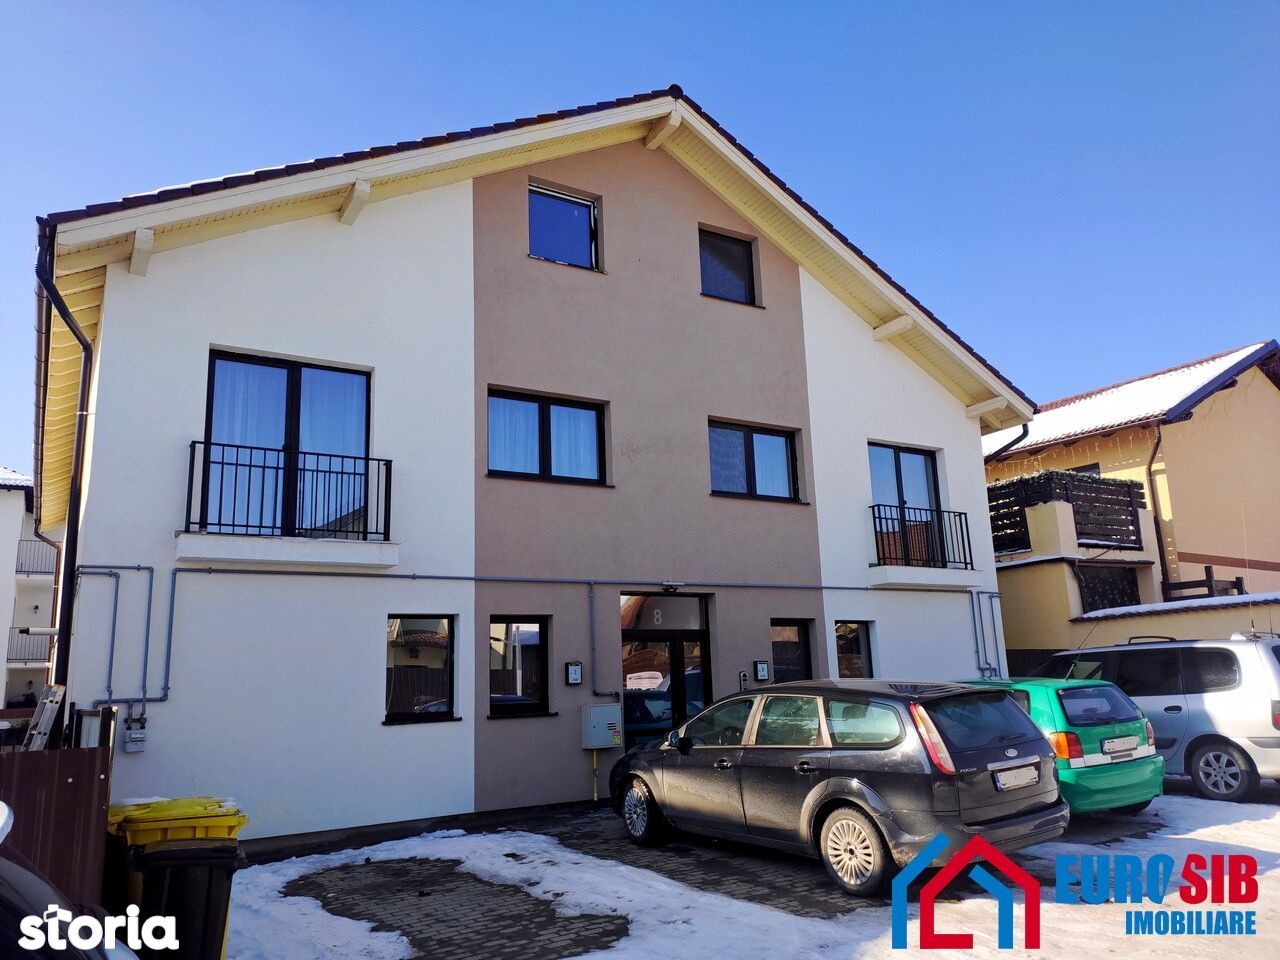 Apartament cu 3 dormitoare si finisaje premium 114 mp utili in Sibiu